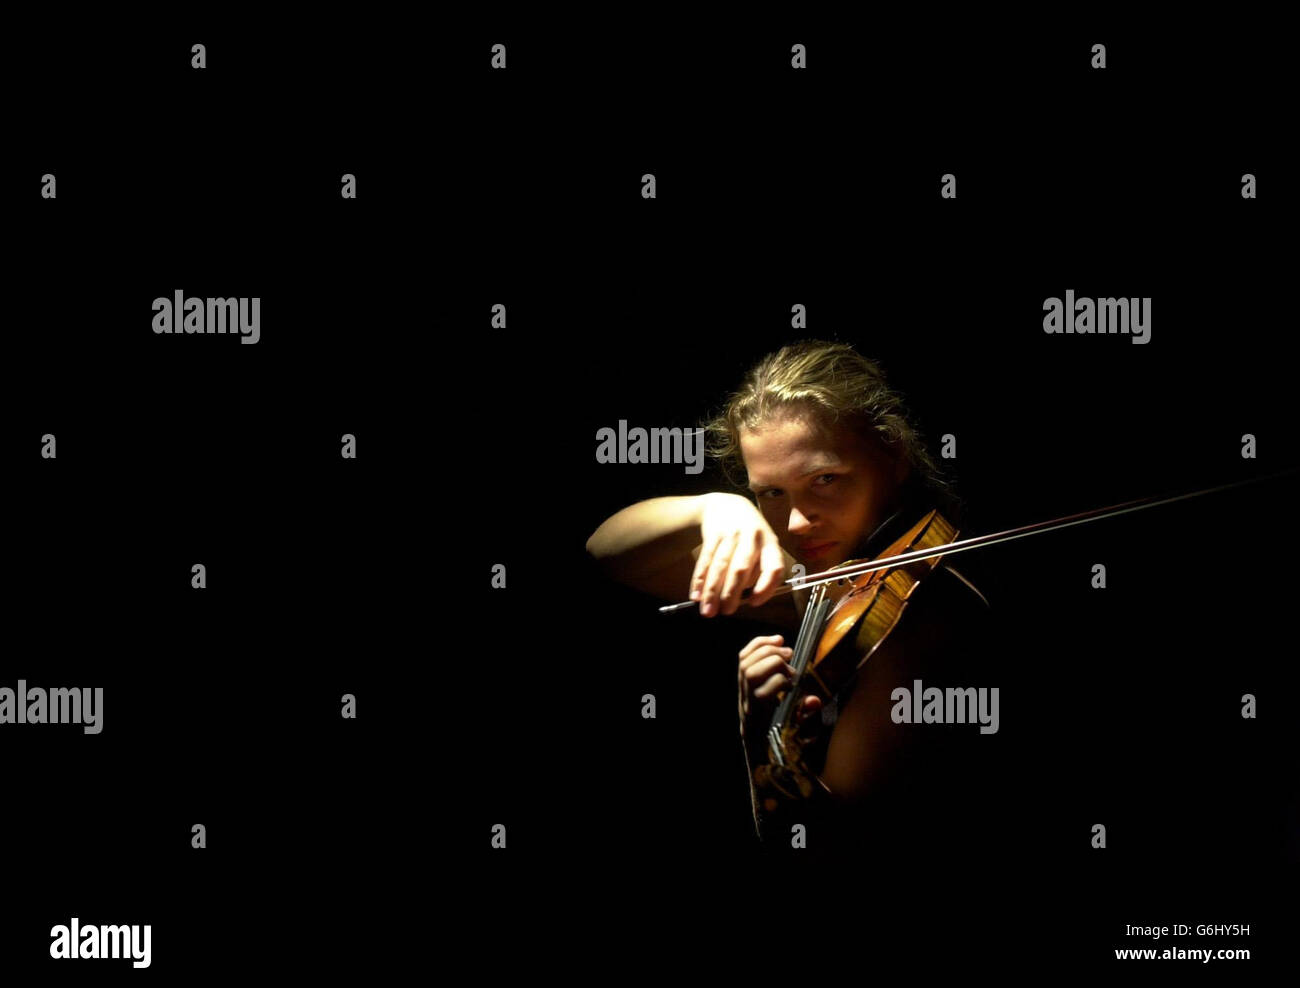 Mari Samuelson joue un violon 1716 réalisé par Antonio Stradavari aux enchères de Sotheby à Londres.Les instruments, qui doivent être vendus dans une vente aux enchères du 11 novembre, devraient rapporter respectivement 600,000 - 800,000 et 300,000 - 500,000. Banque D'Images